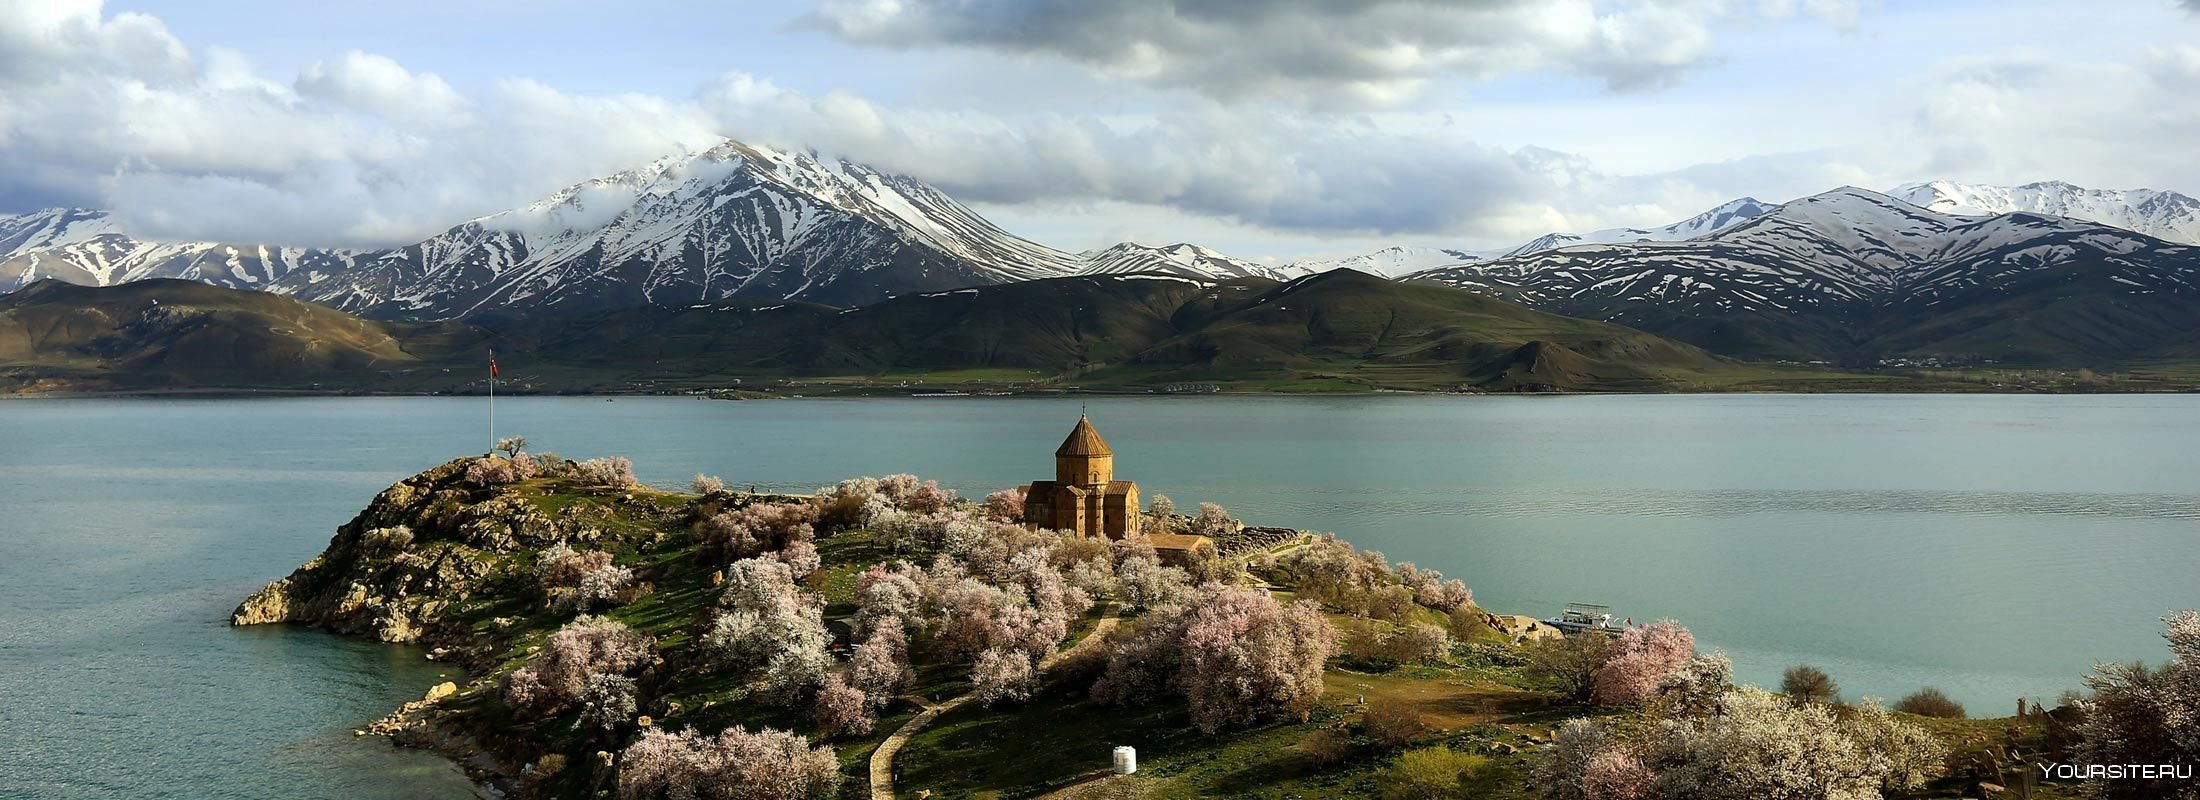 Моря закавказья. Природа Армении озеро Севан. Озеро Севан озеро Ван. Армения горы Севан. Гора Арарат и озеро Севан.